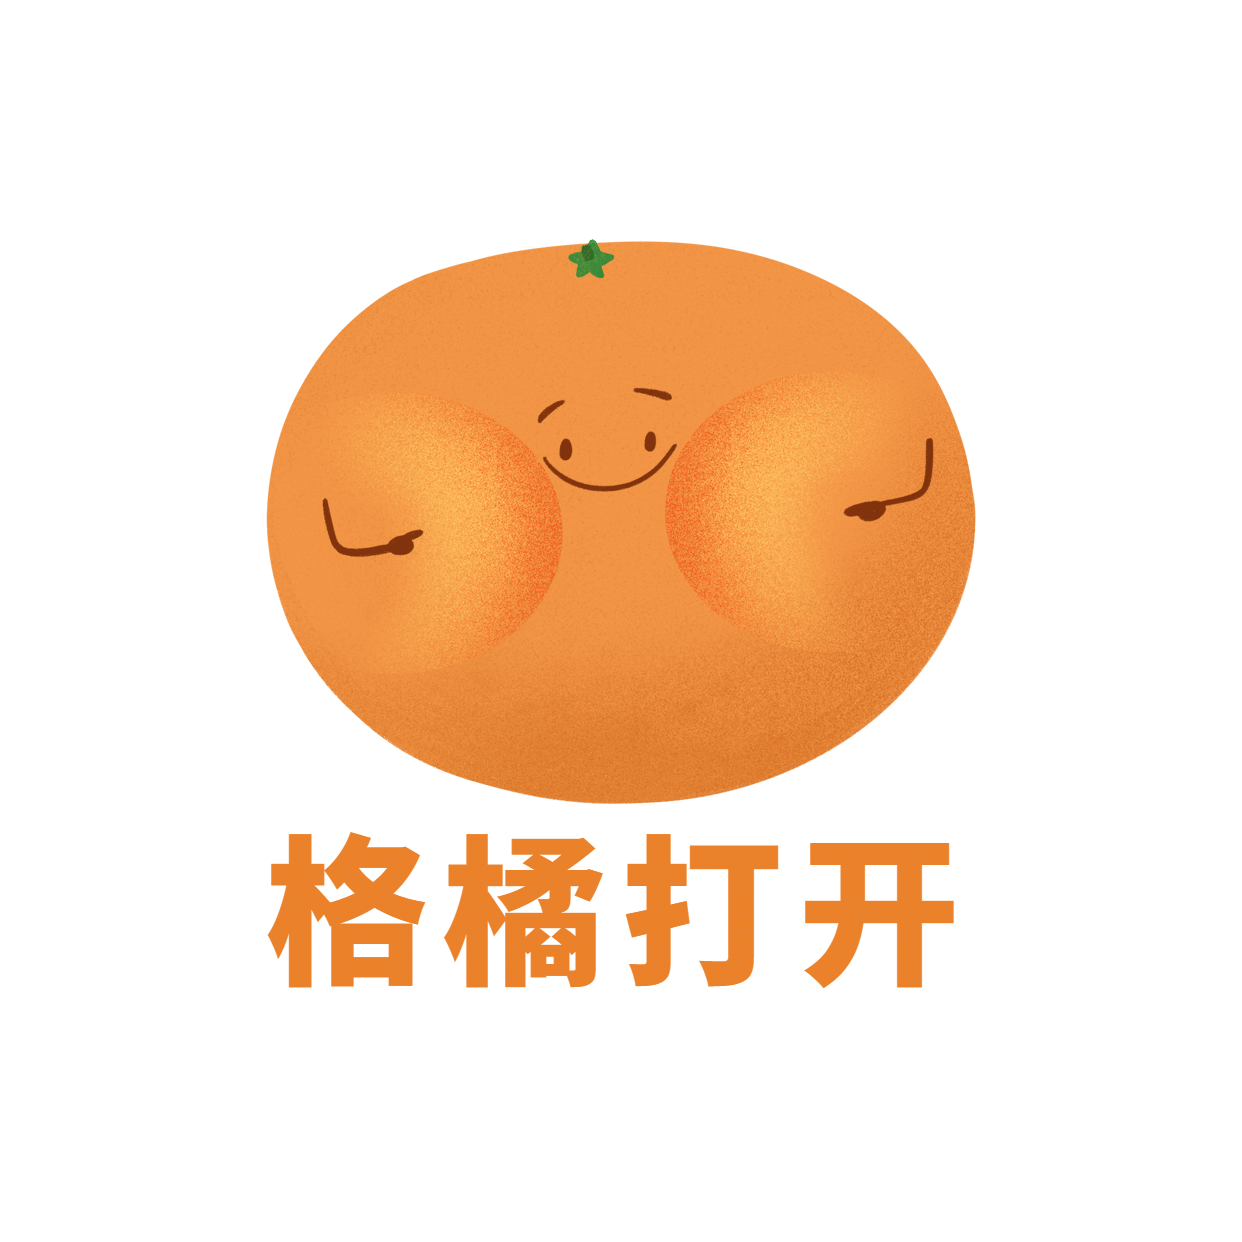 橙色的卡通水果橙子图片素材免费下载 - 觅知网